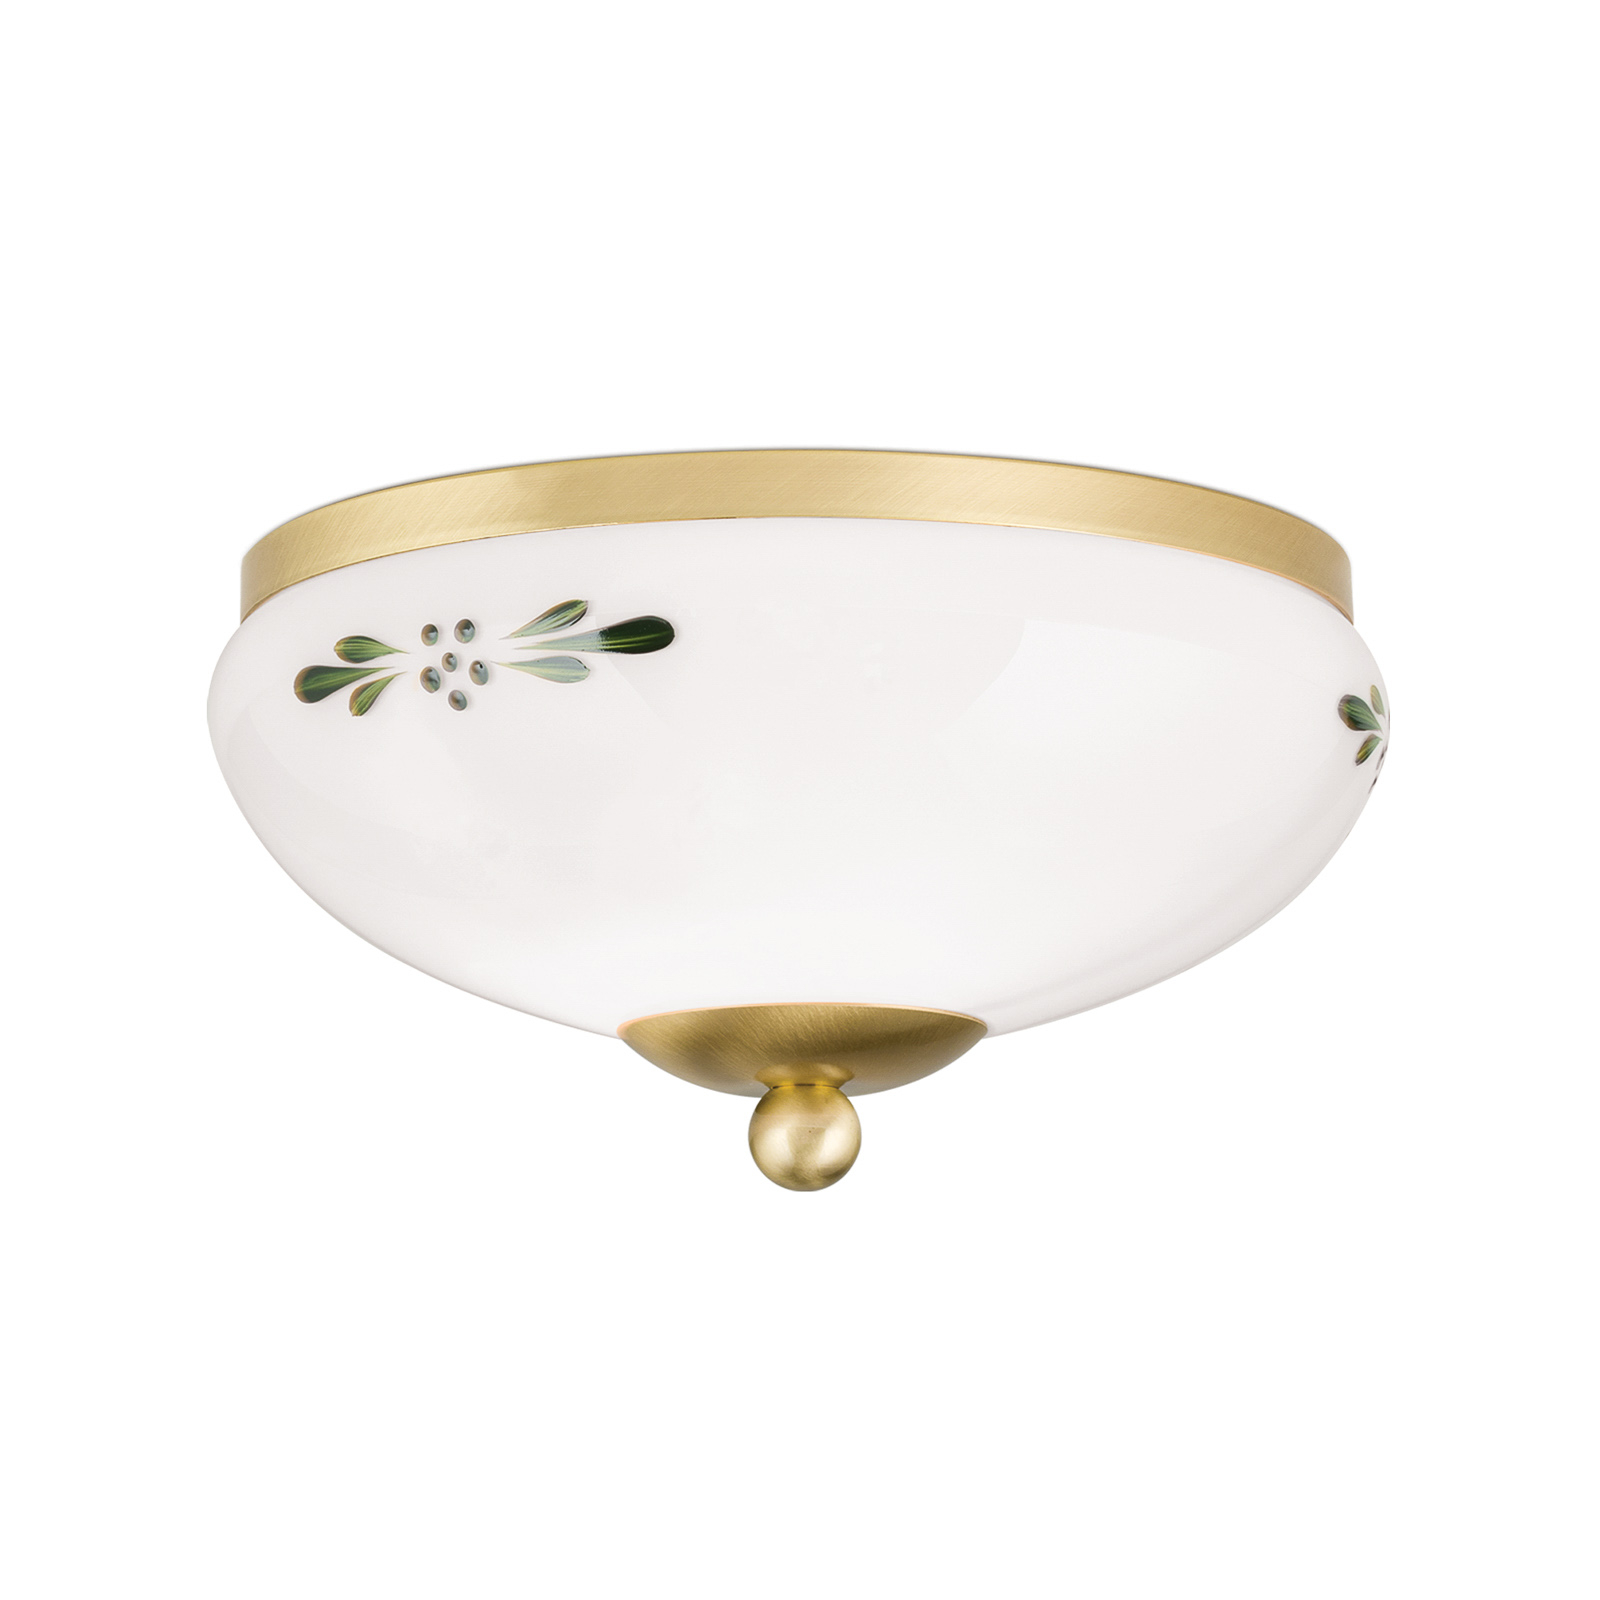 Landhaus ceiling lamp brass opal green Ø 21 cm